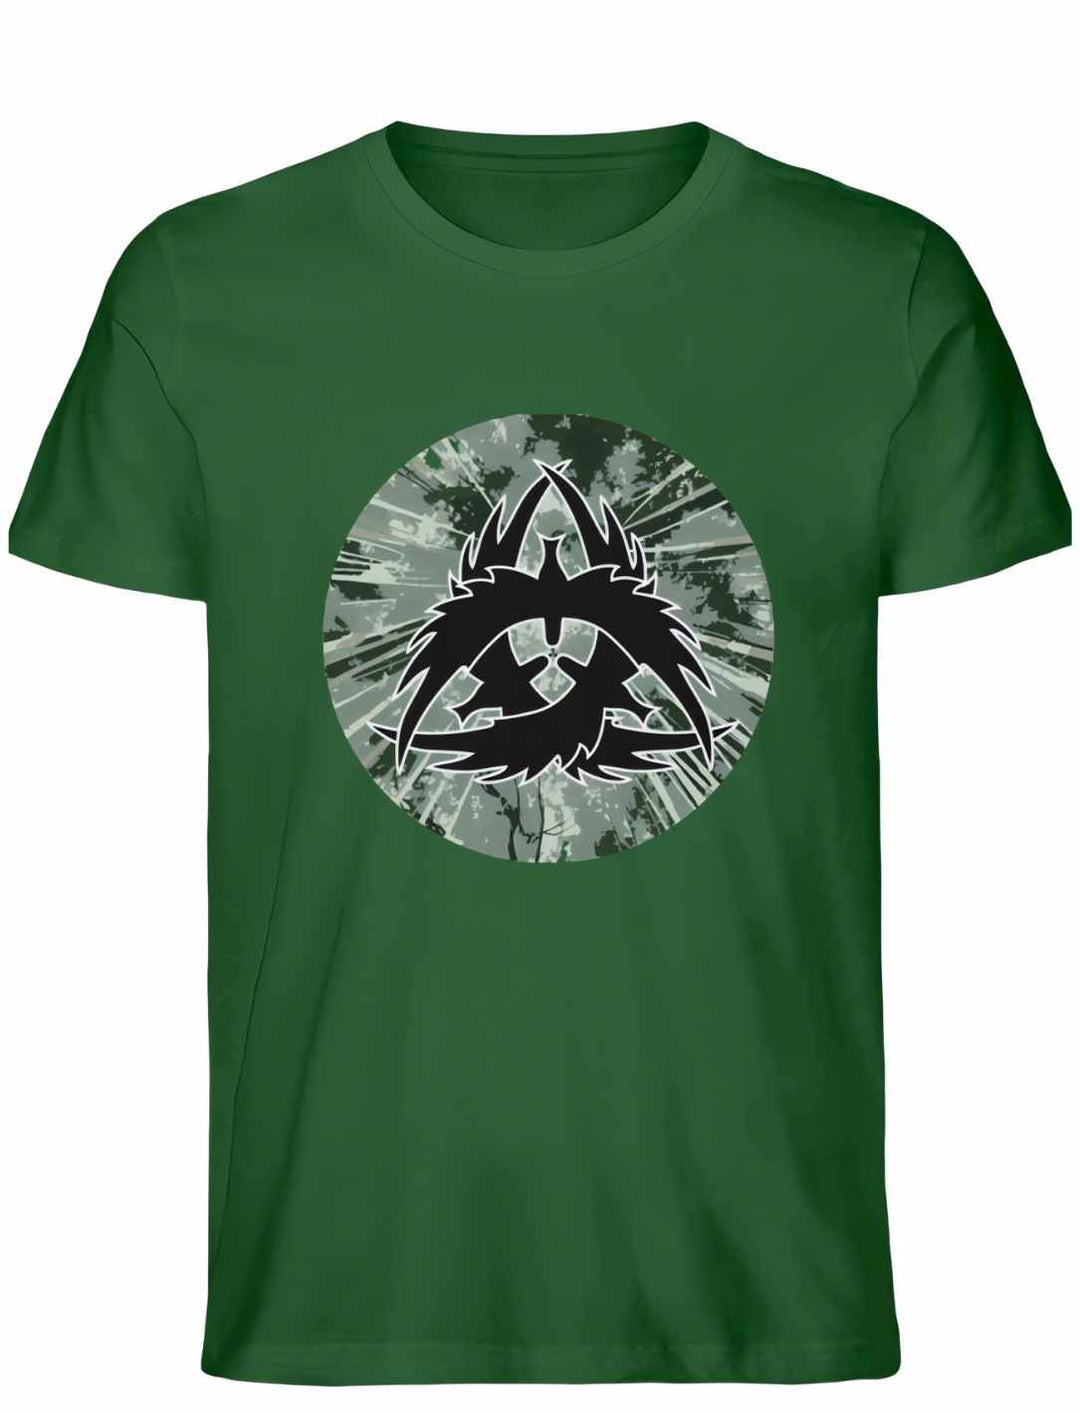 Unisex Organic Bottle Green "The Raven Clan" T-Shirt - Kraft der nordischen Krieger in Premium Qualität